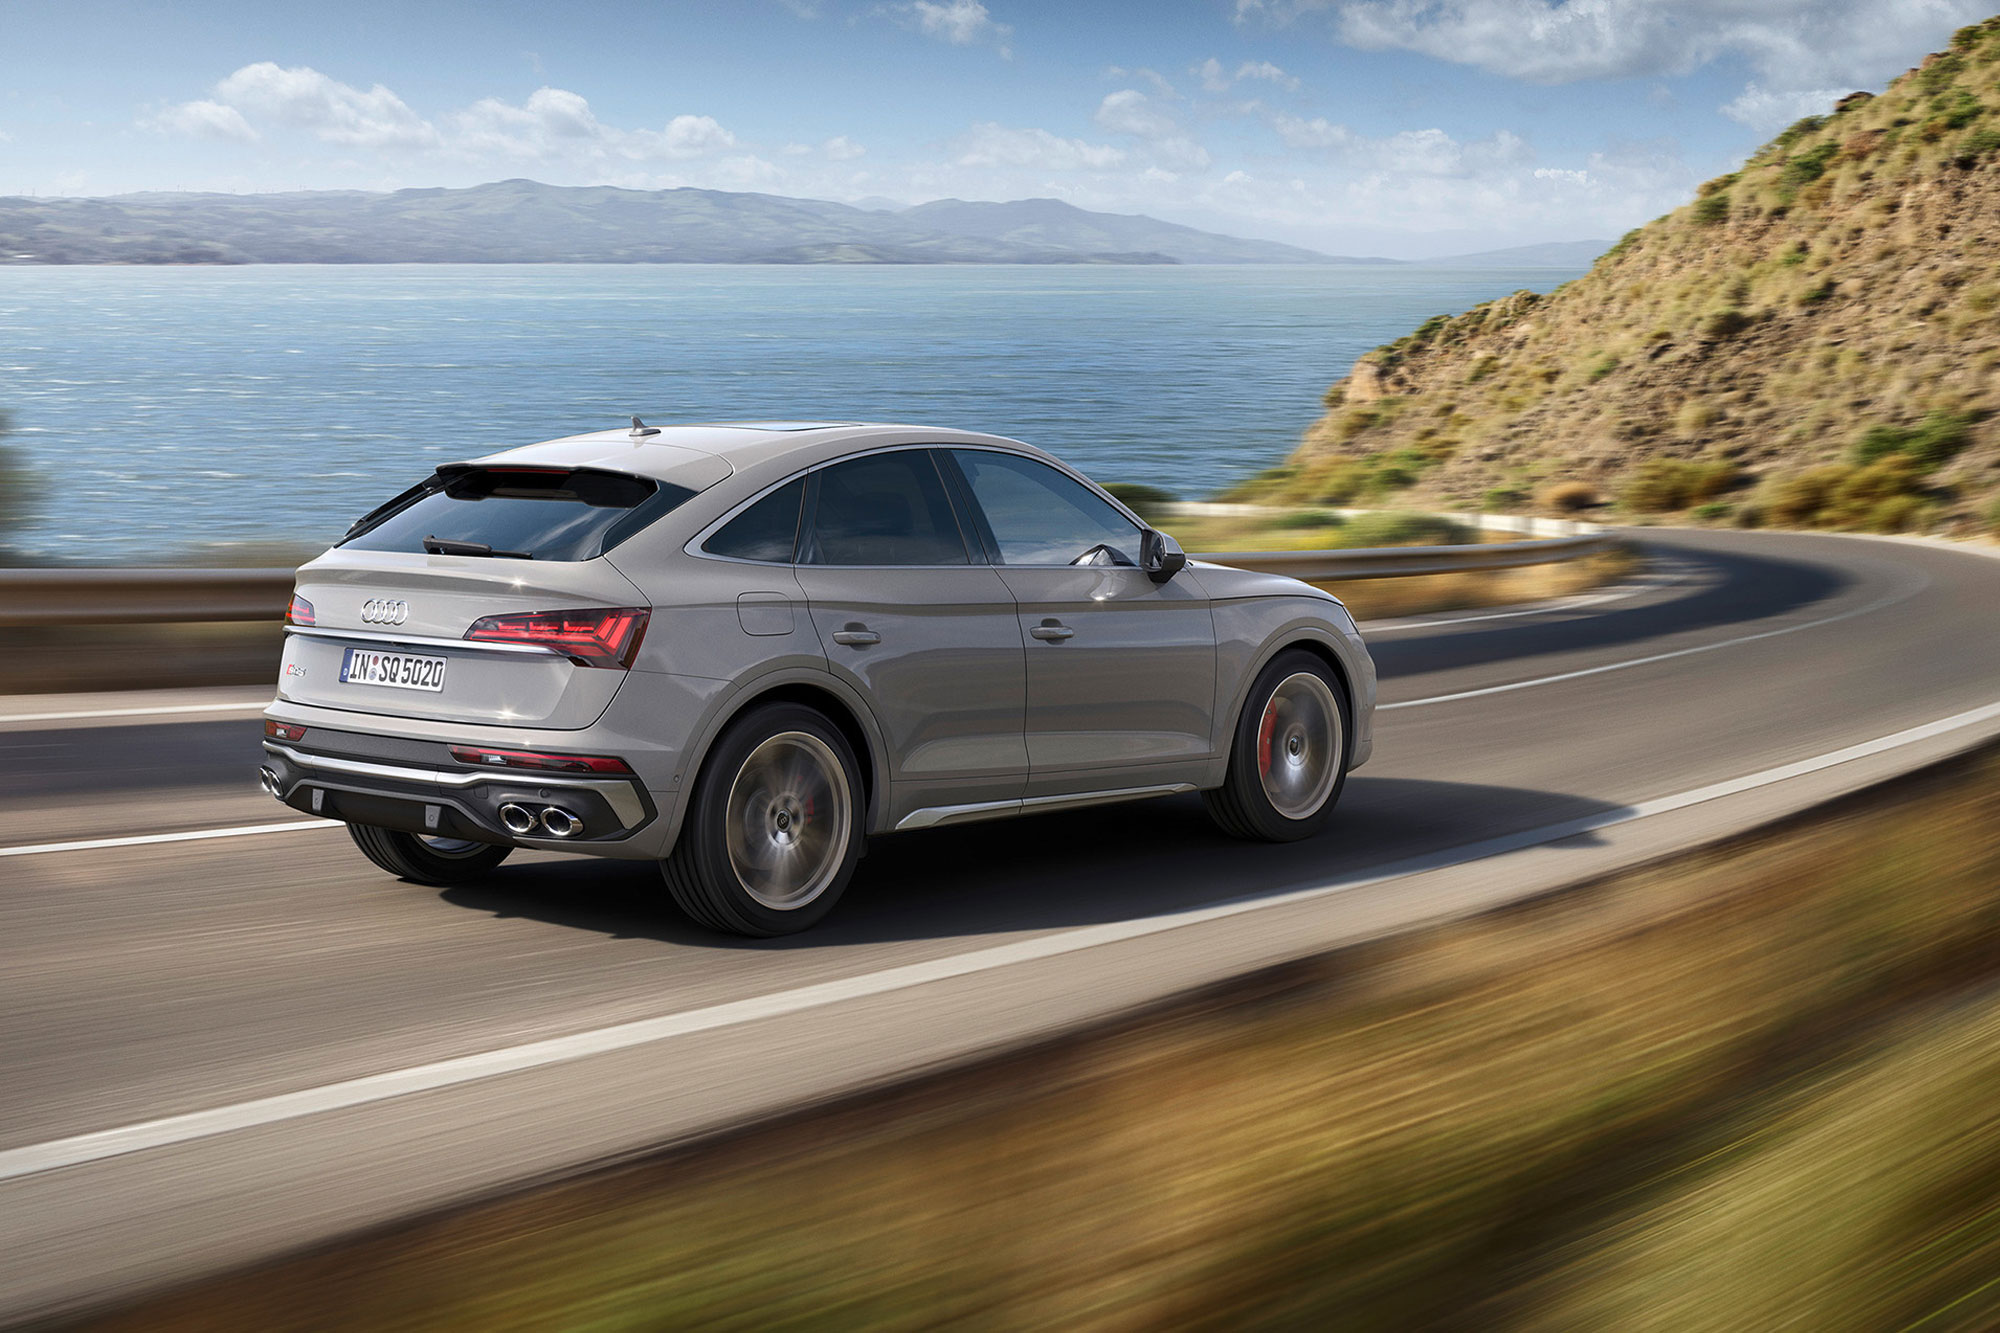 Έρχεται στην Ελλάδα το νέο Audi SQ5 Sportback TDI